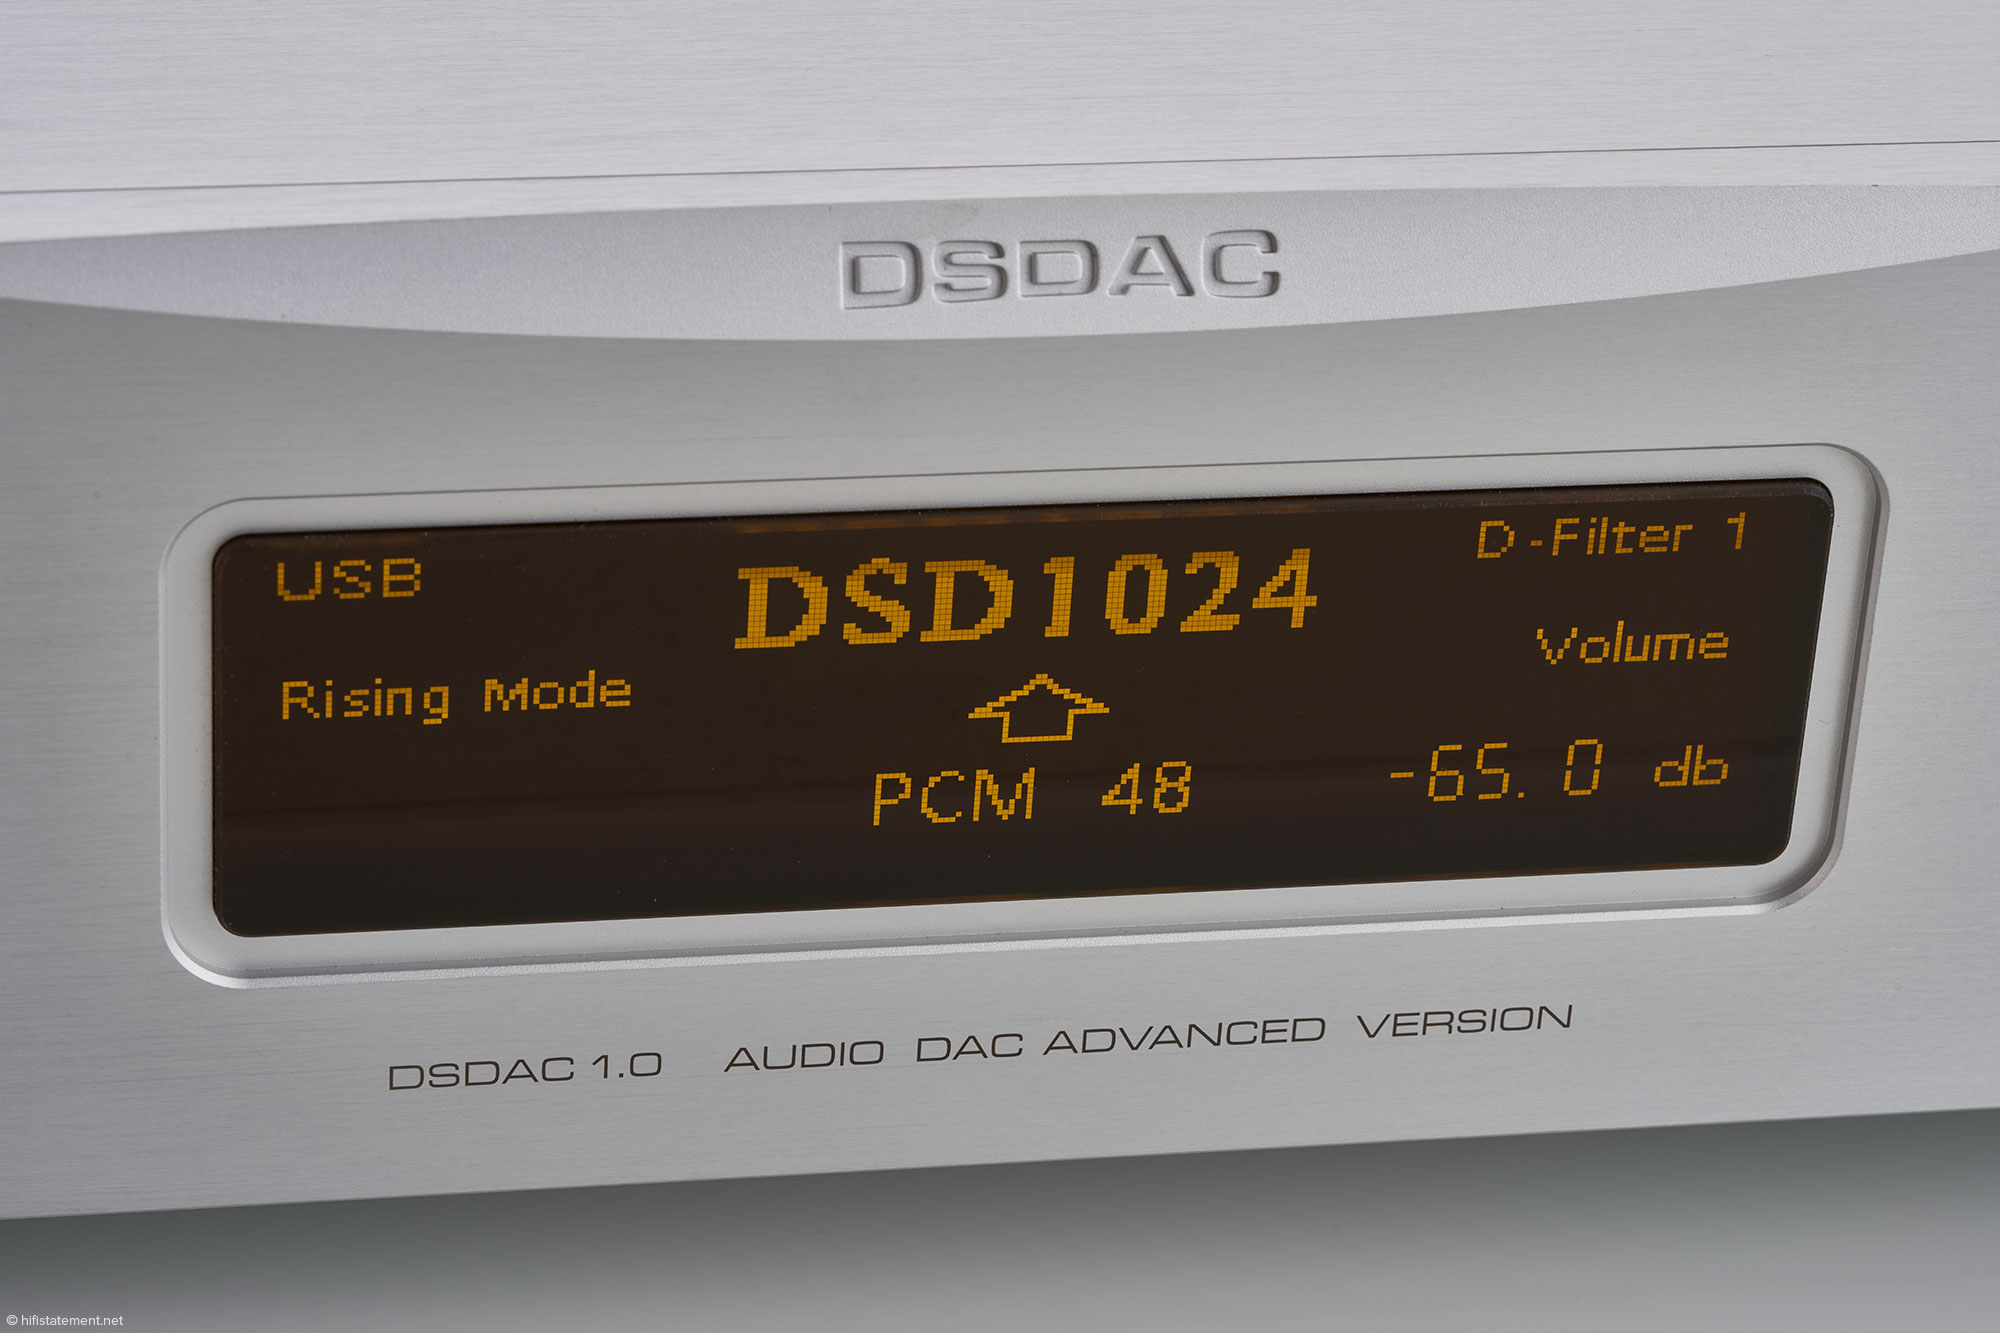 Дисплей информирует о выбранном входе (USB), режиме апсемплинга (Rising), формате источника (PCM 48 килогерц), целевом формате (DSD1024), типе фильтра (1), режиме громкости (Volume) и установленной громкости в децибелах.